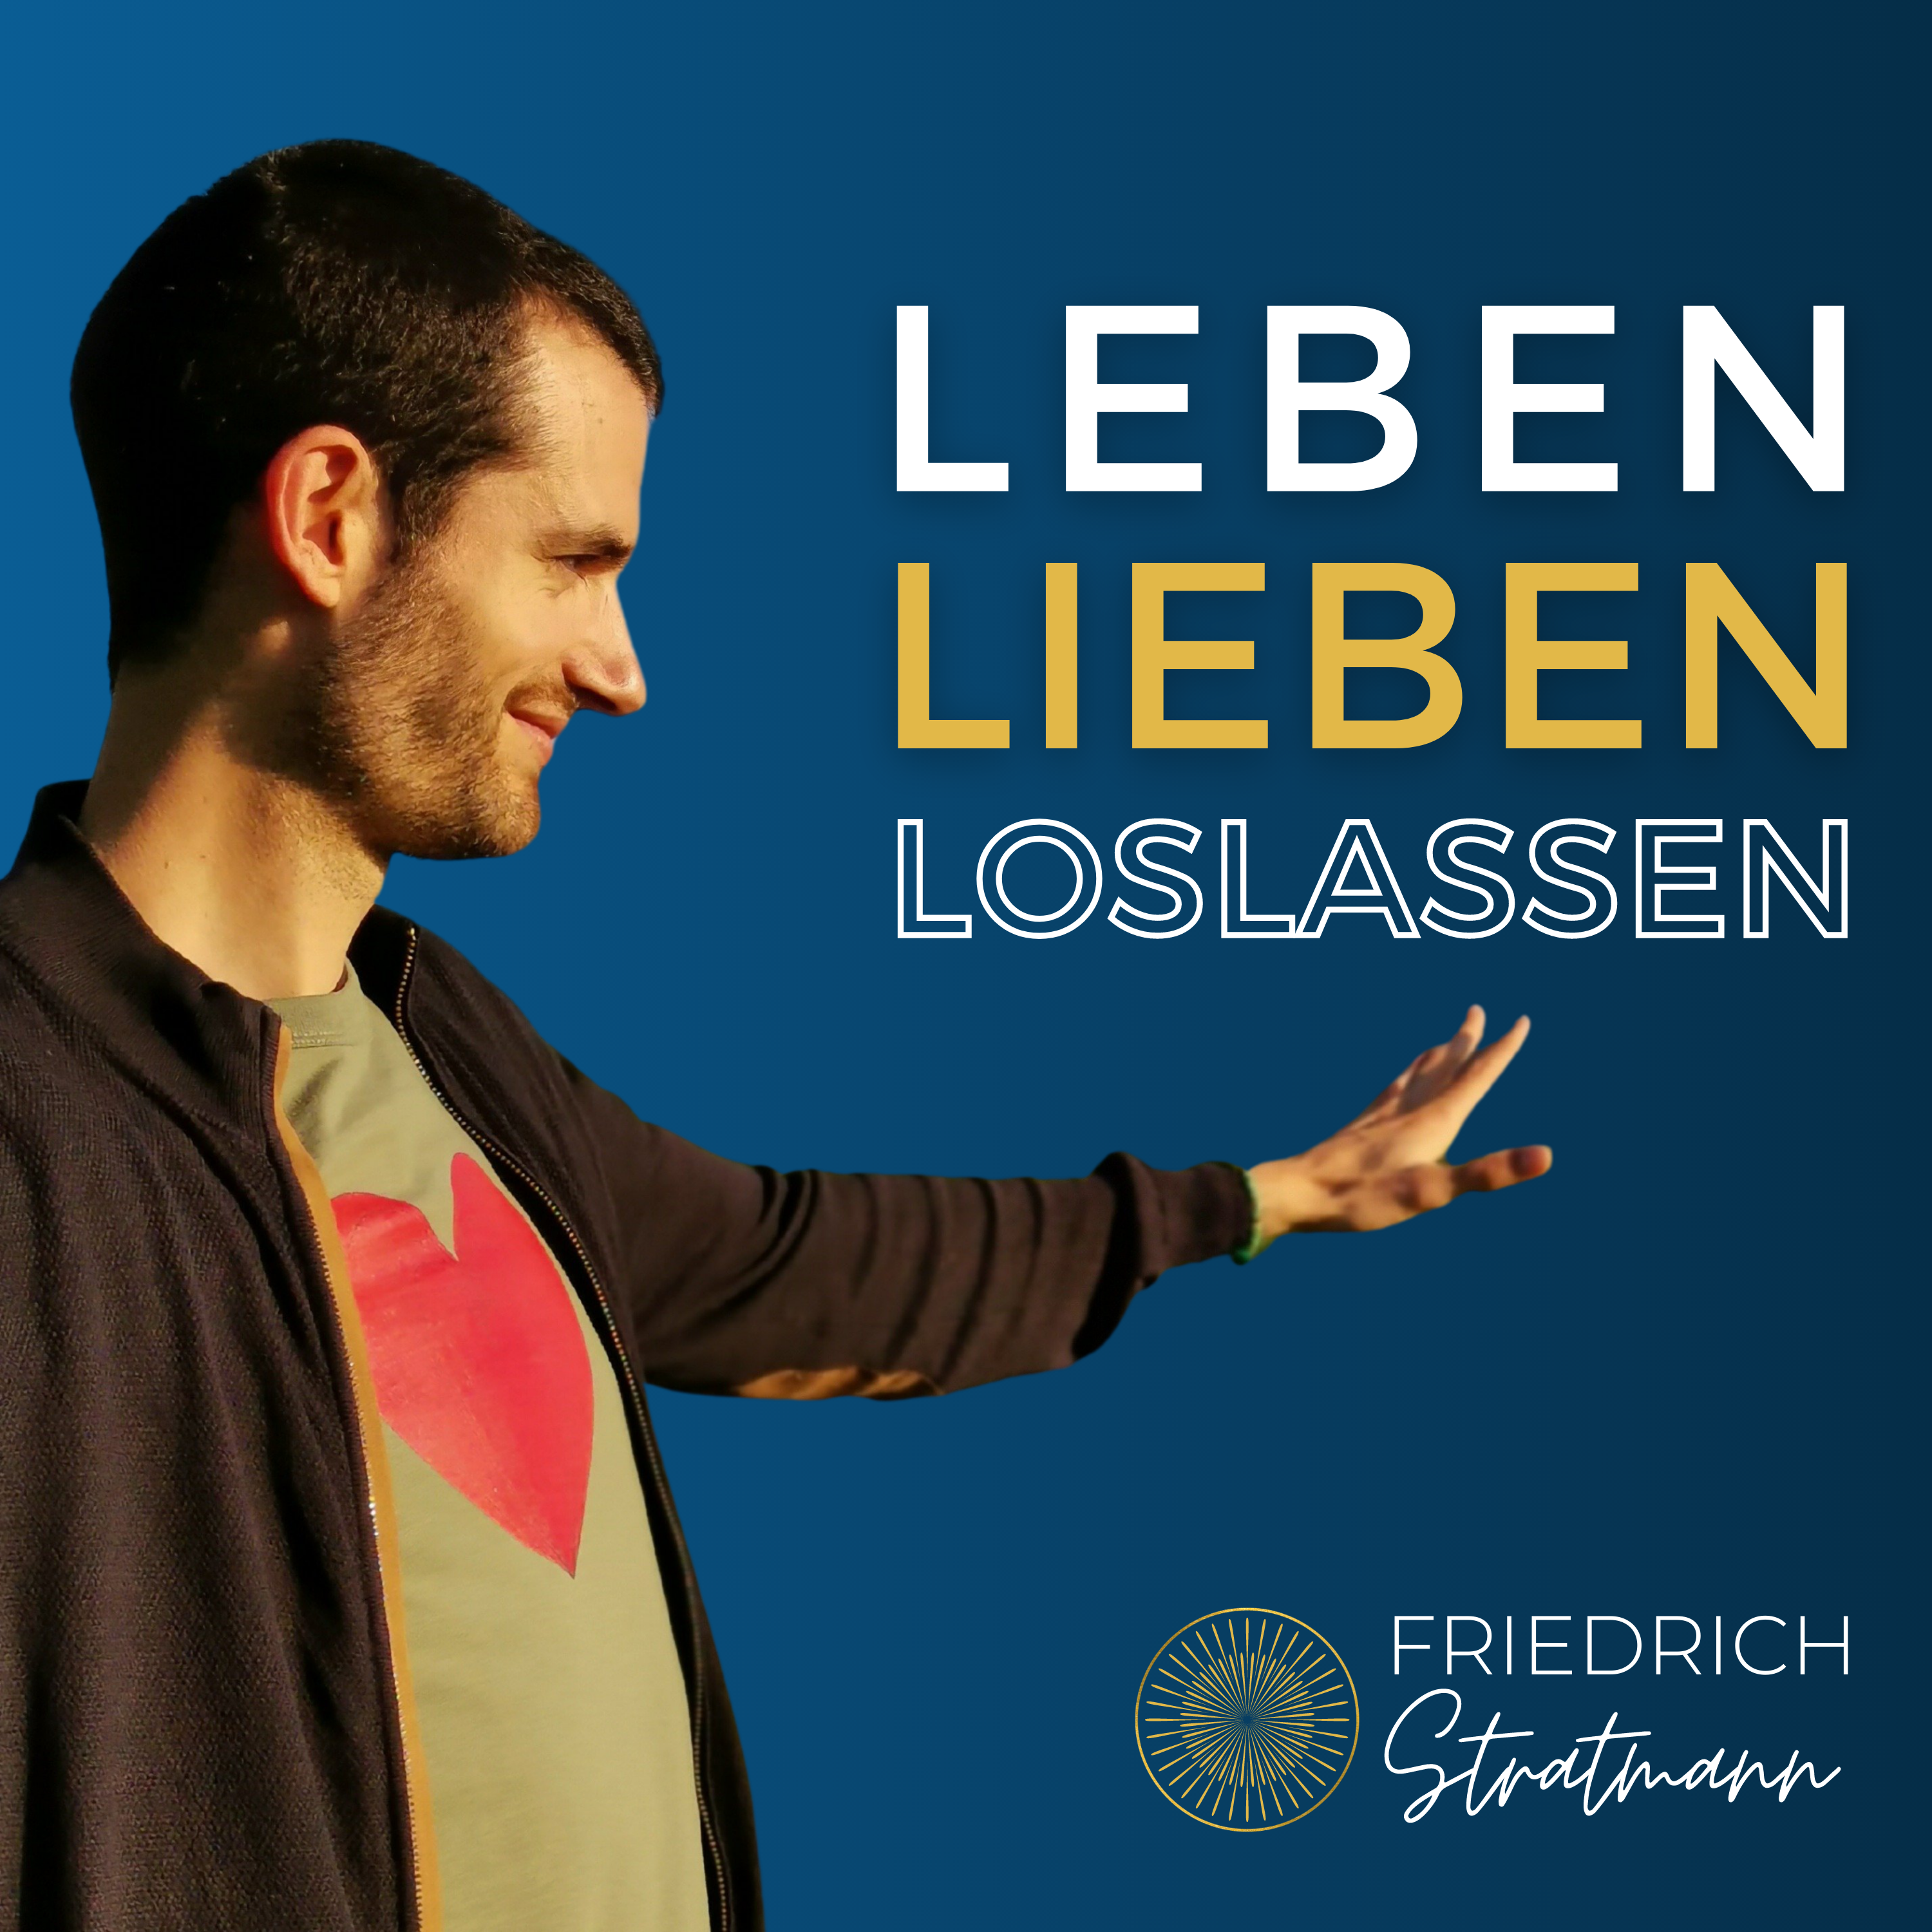 Leben Lieben Loslassen Podcast Friedrich Stratmann